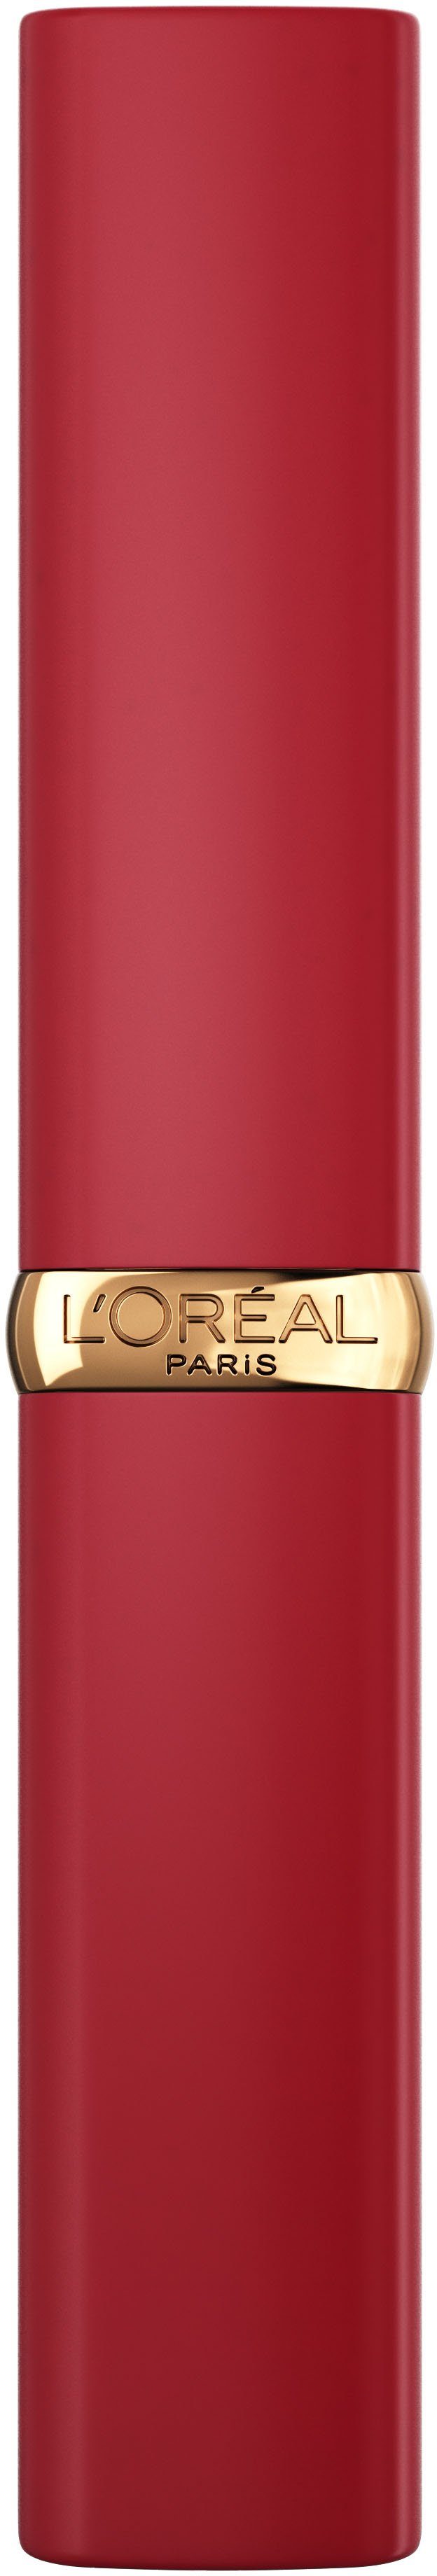 Intense Color Matte Volume Riche L'ORÉAL Lippenpflegestift PARIS